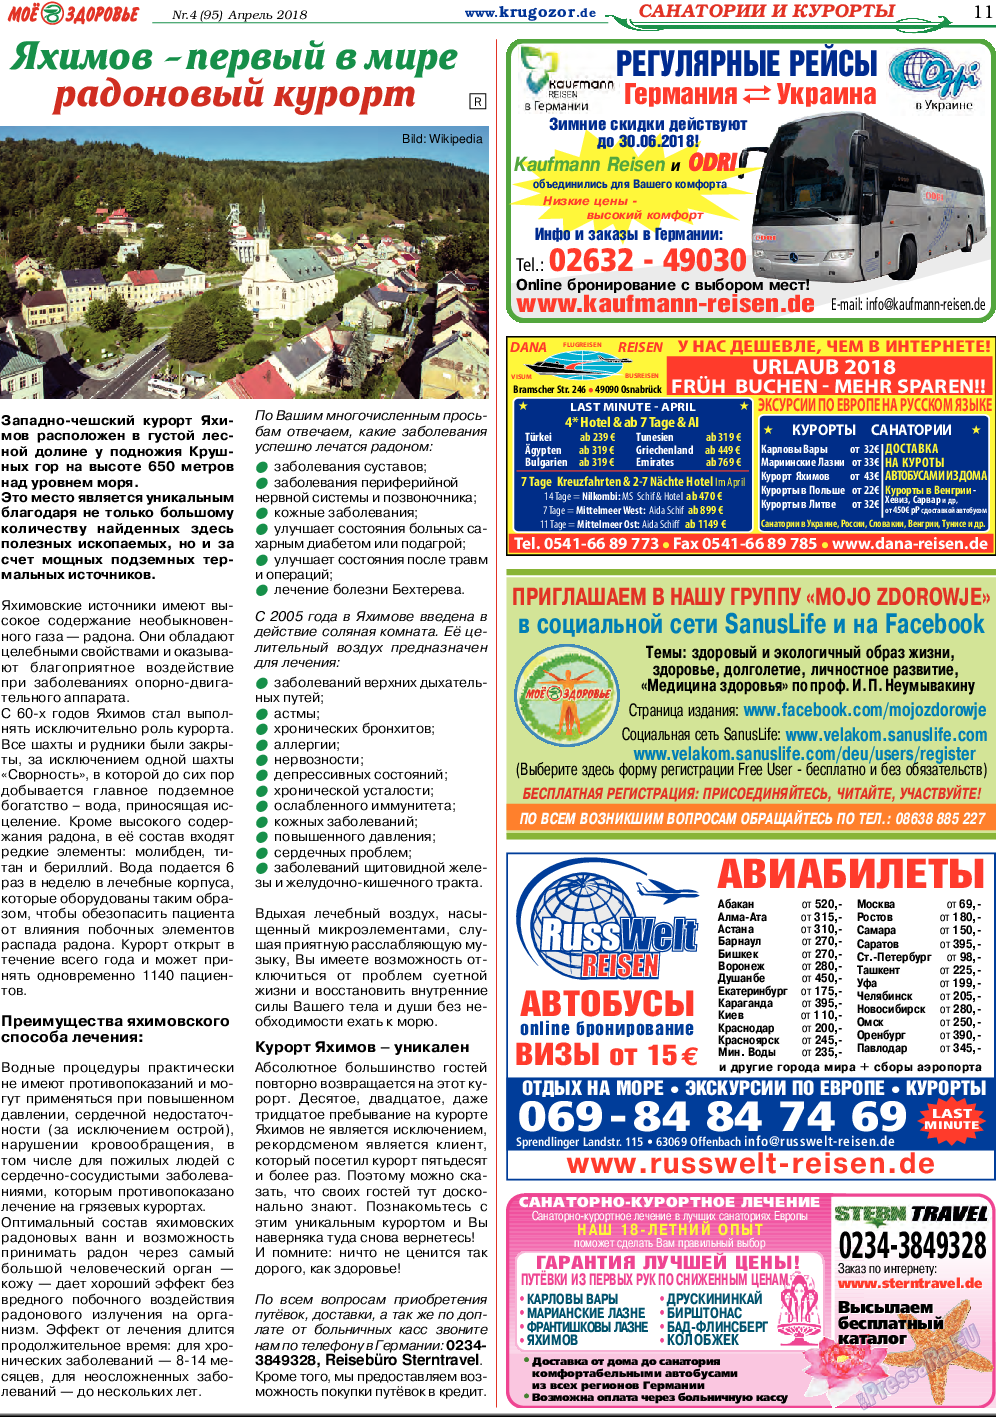 Кругозор, газета. 2018 №4 стр.11